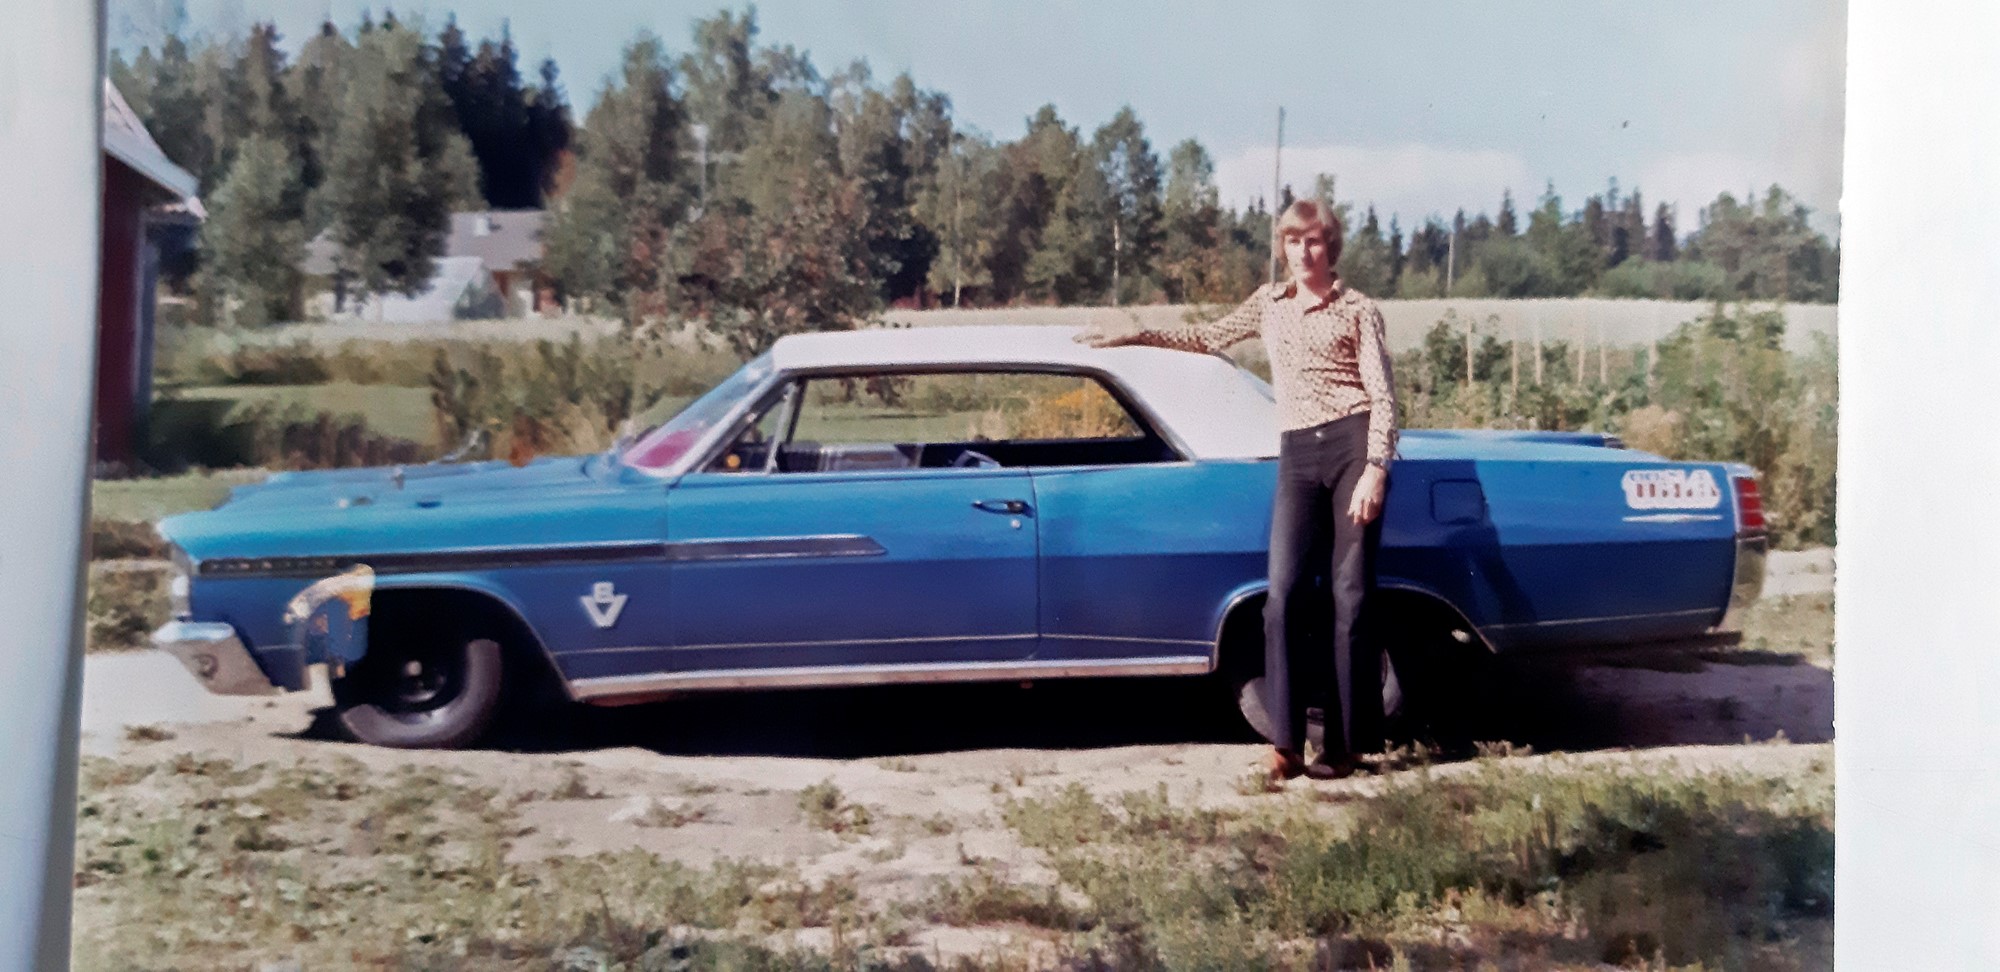 Första jänkaren köpte Inge 1977 för 12.000 kronor. Det var en svensksåld Pontiac Parisienne -63.